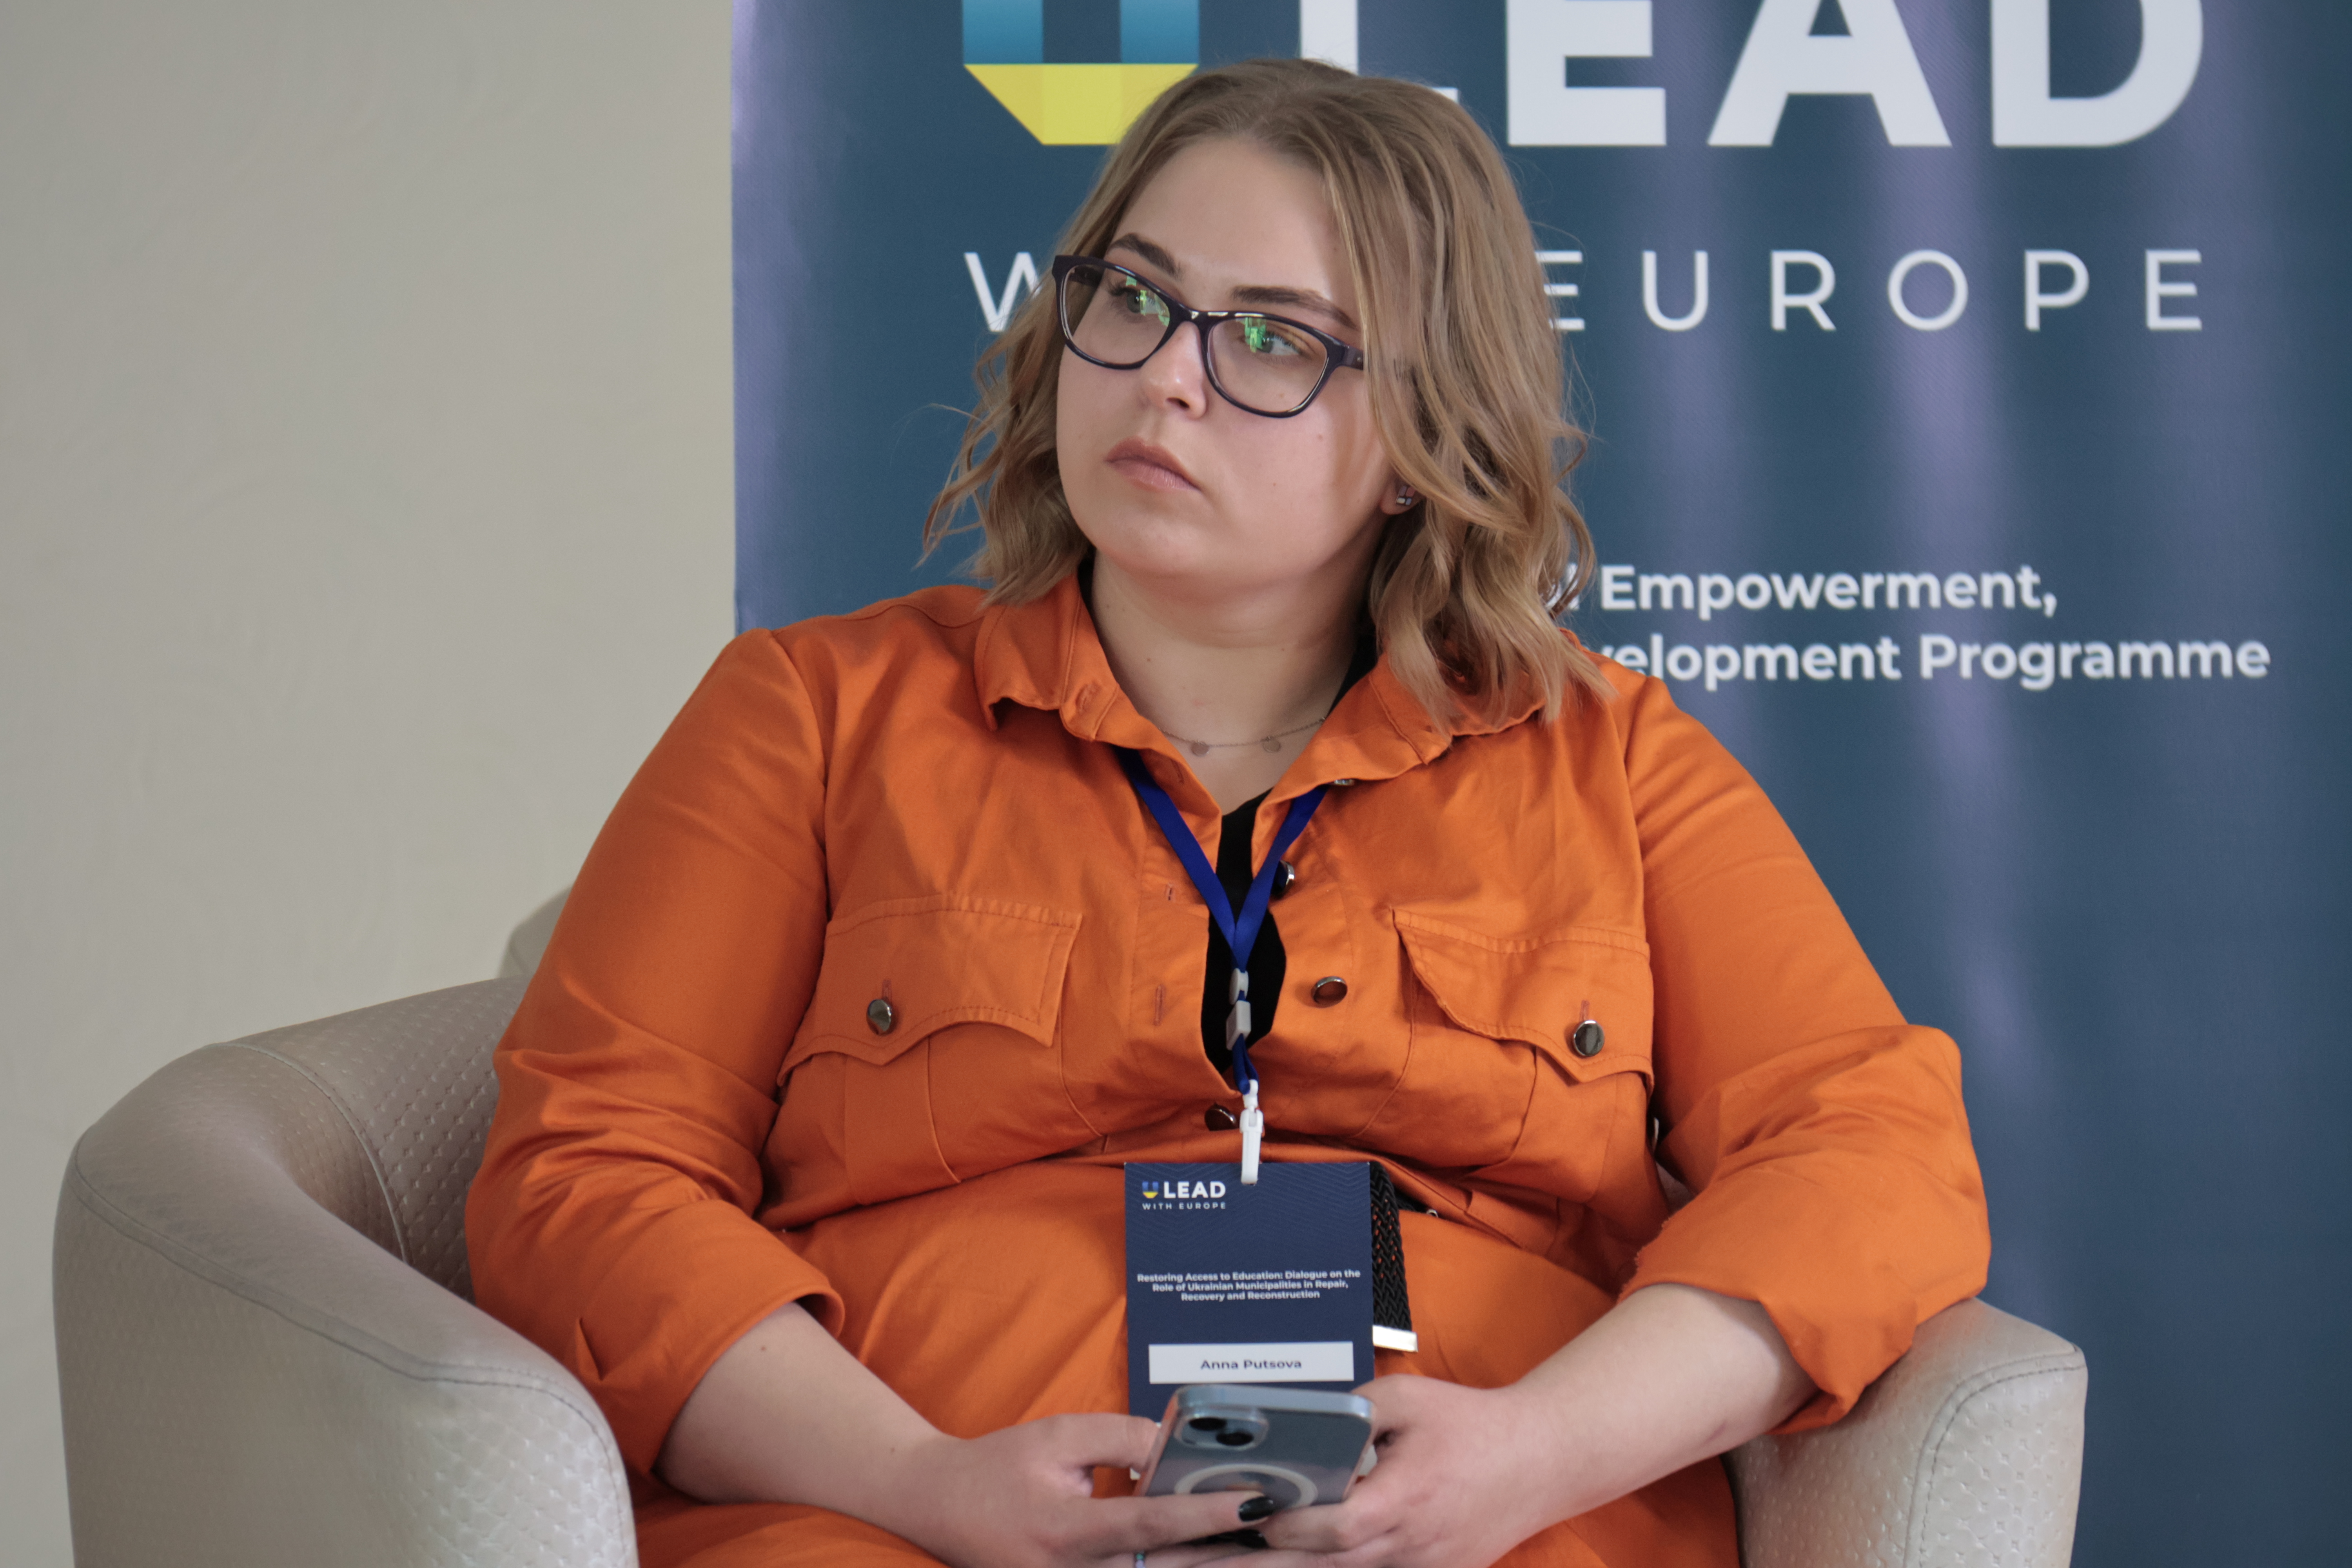 Representative of savED, Anna Putsova